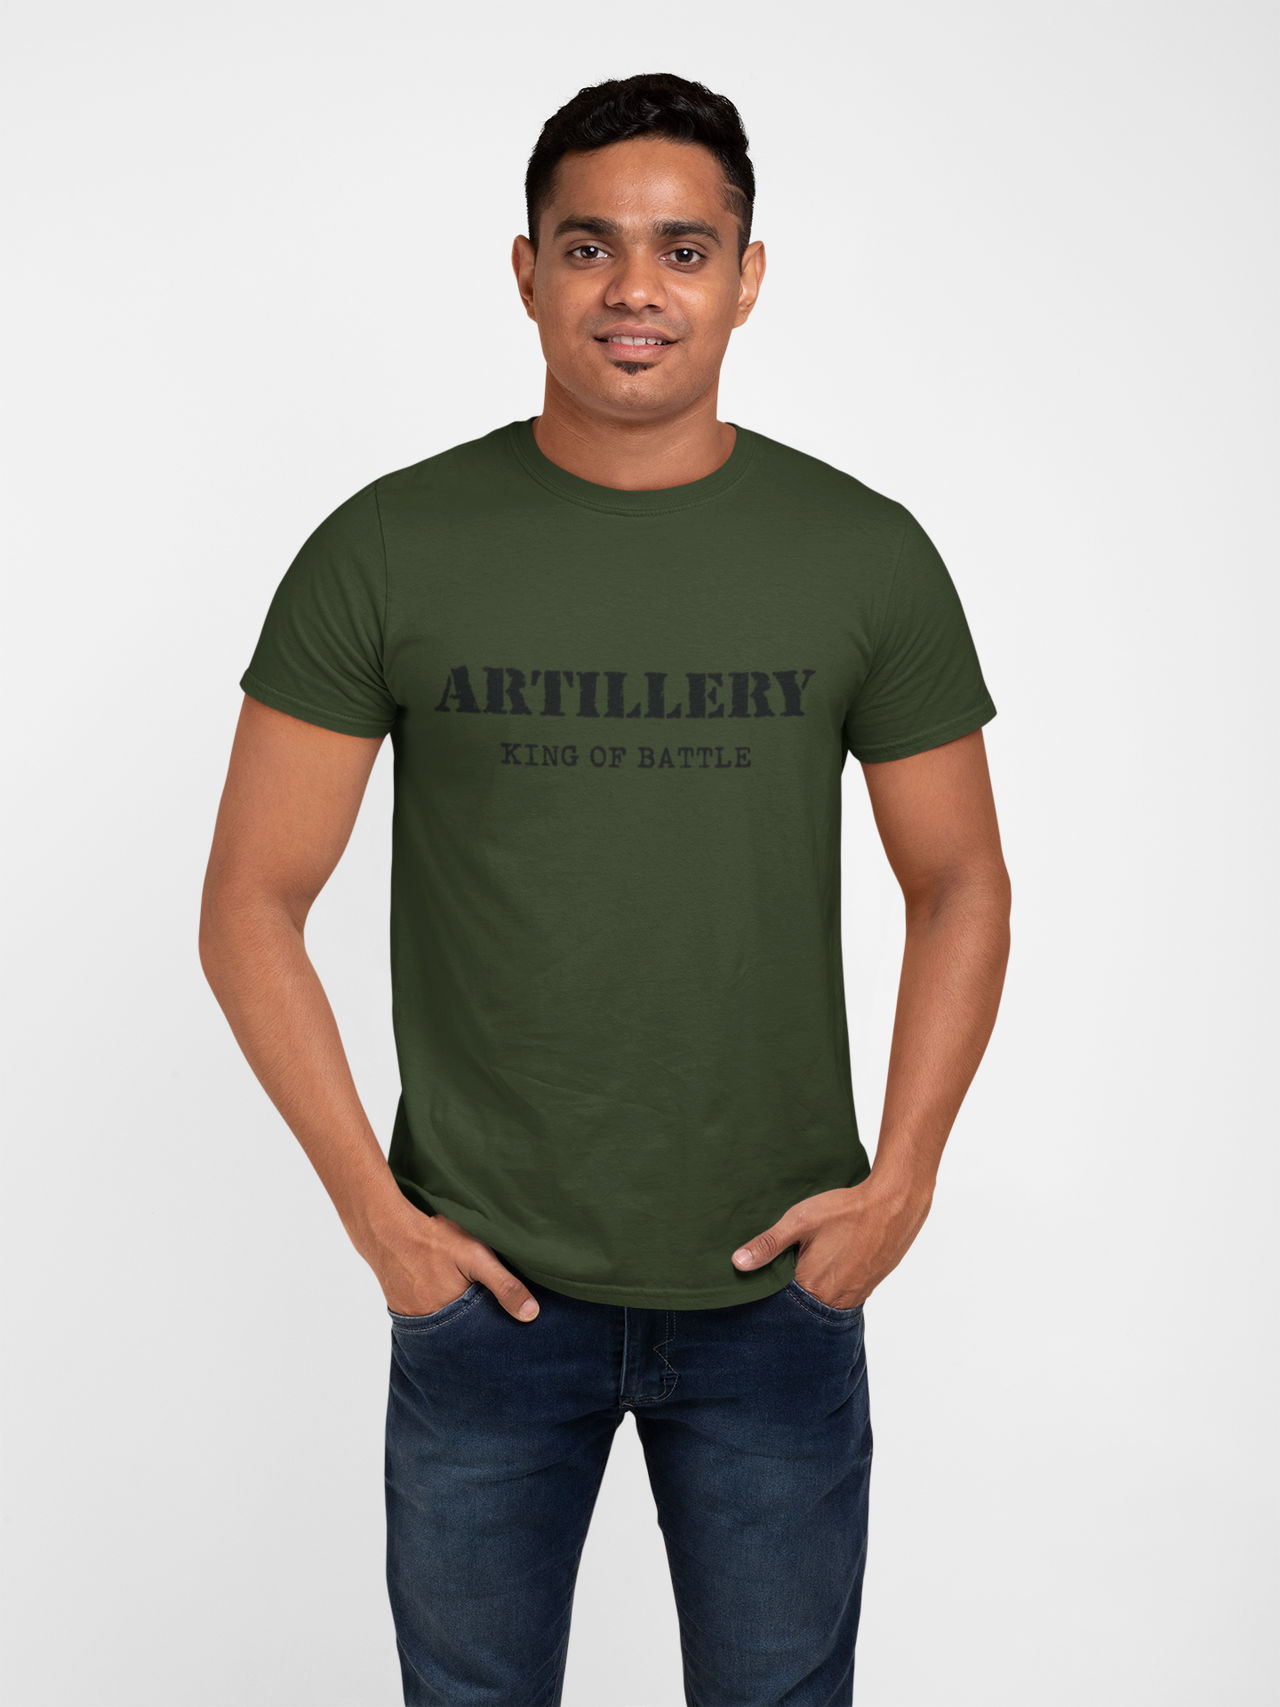 Artillery T-shirt - Artillery King of Battle (Men)